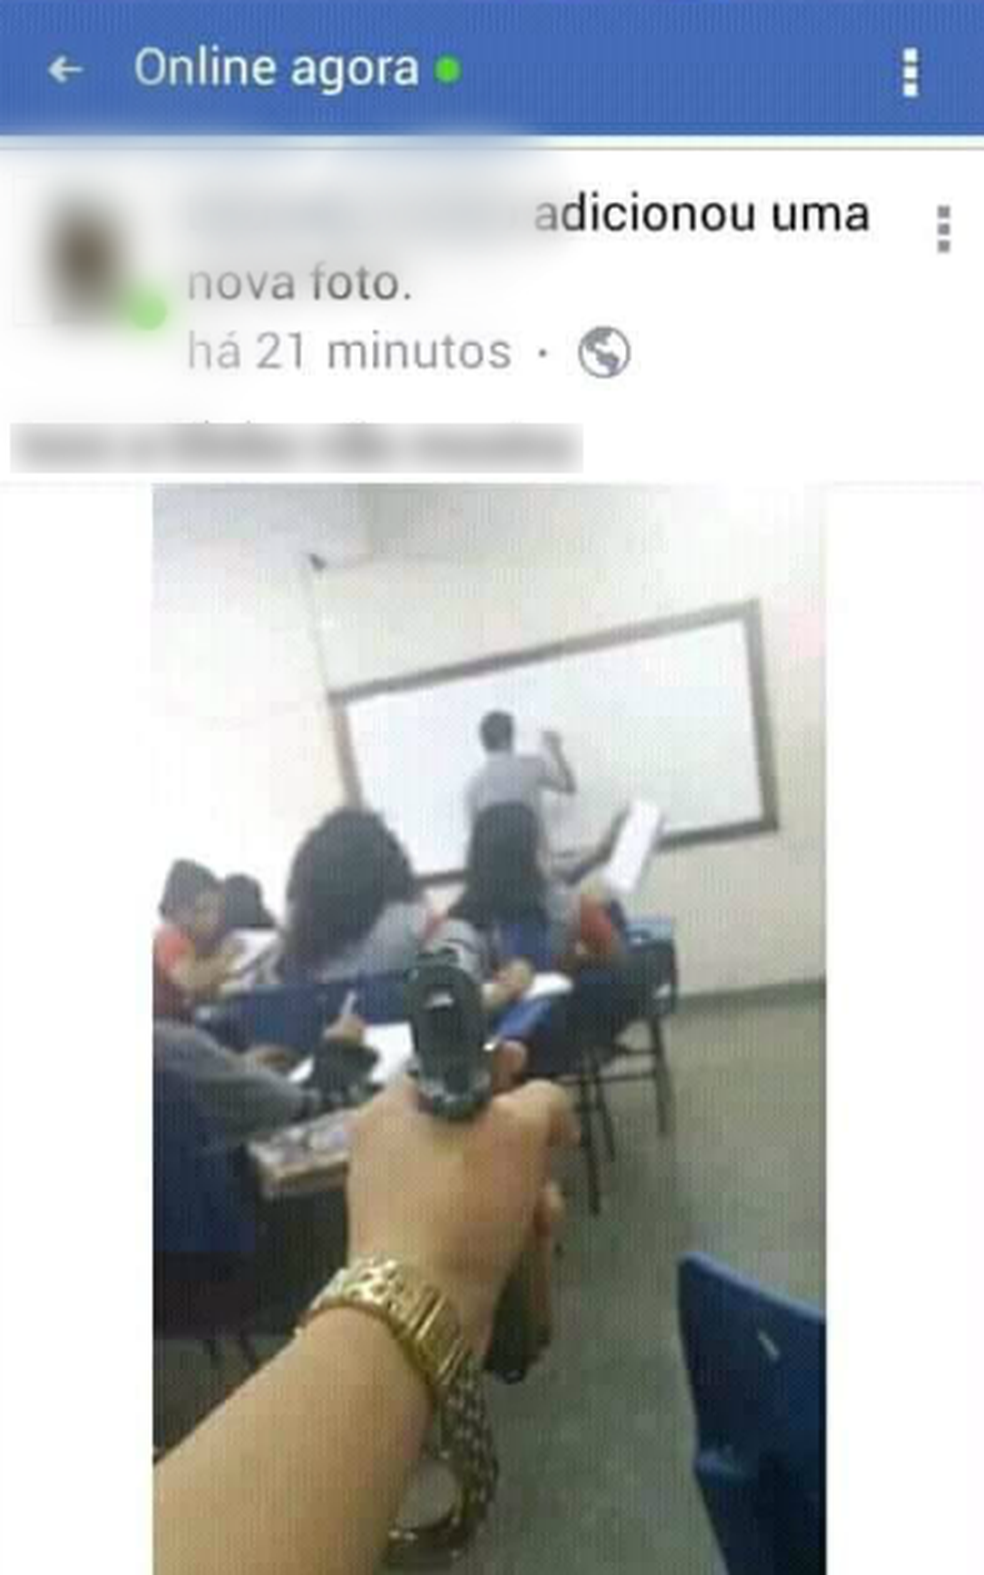 Aluno ainda publicou foto em rede social ao apontar arma para professor durante aula (Foto: Reprodução)